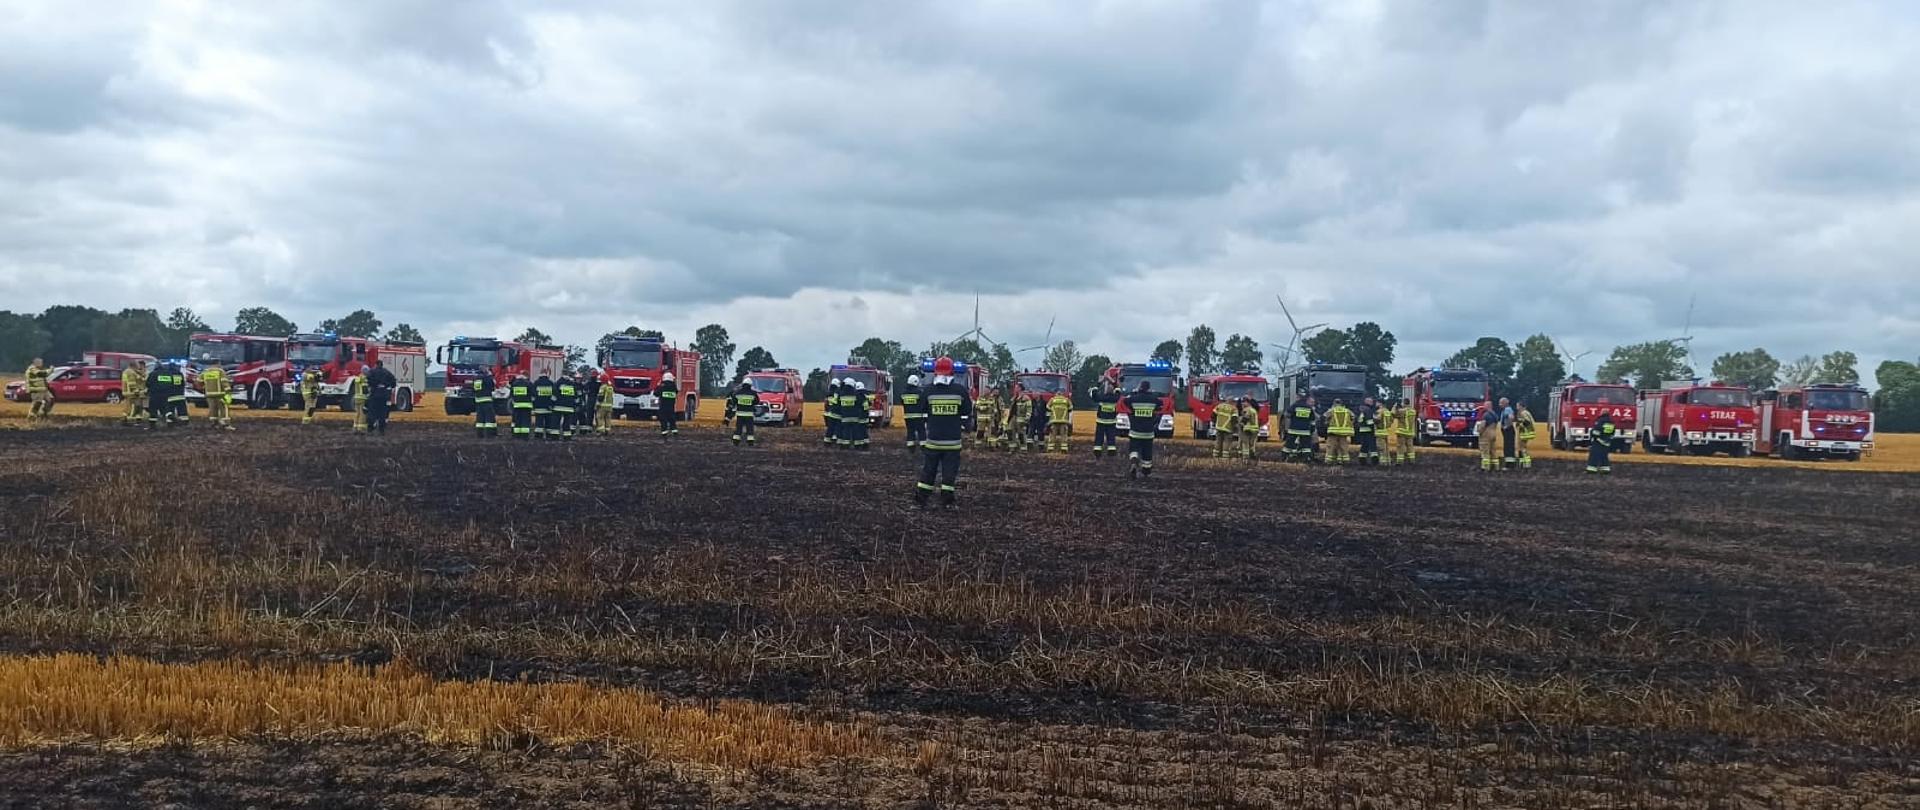 Zdjęcie przedstawia spalone pole wraz z ratownikami uczestniczącymi w zdarzeniu.